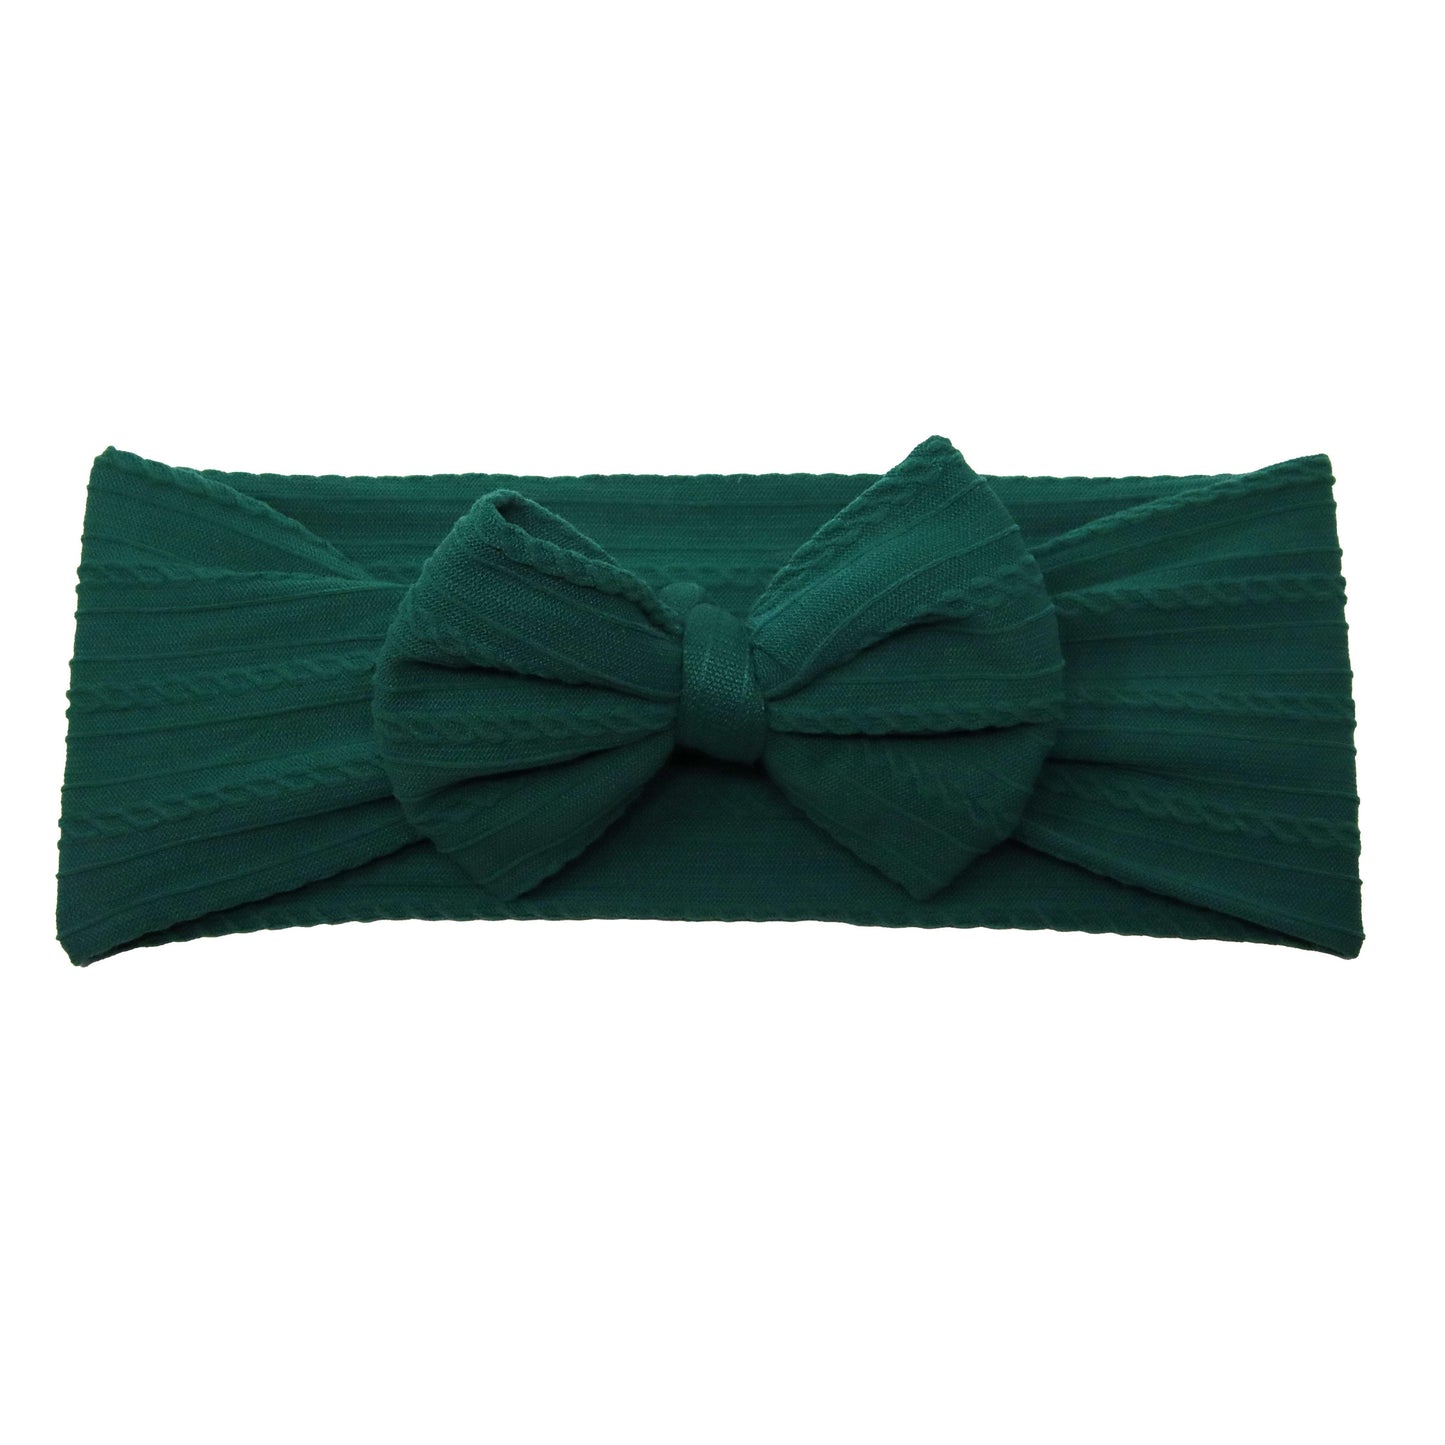 Emerald Green Braid Knit Bow Headwrap 4"